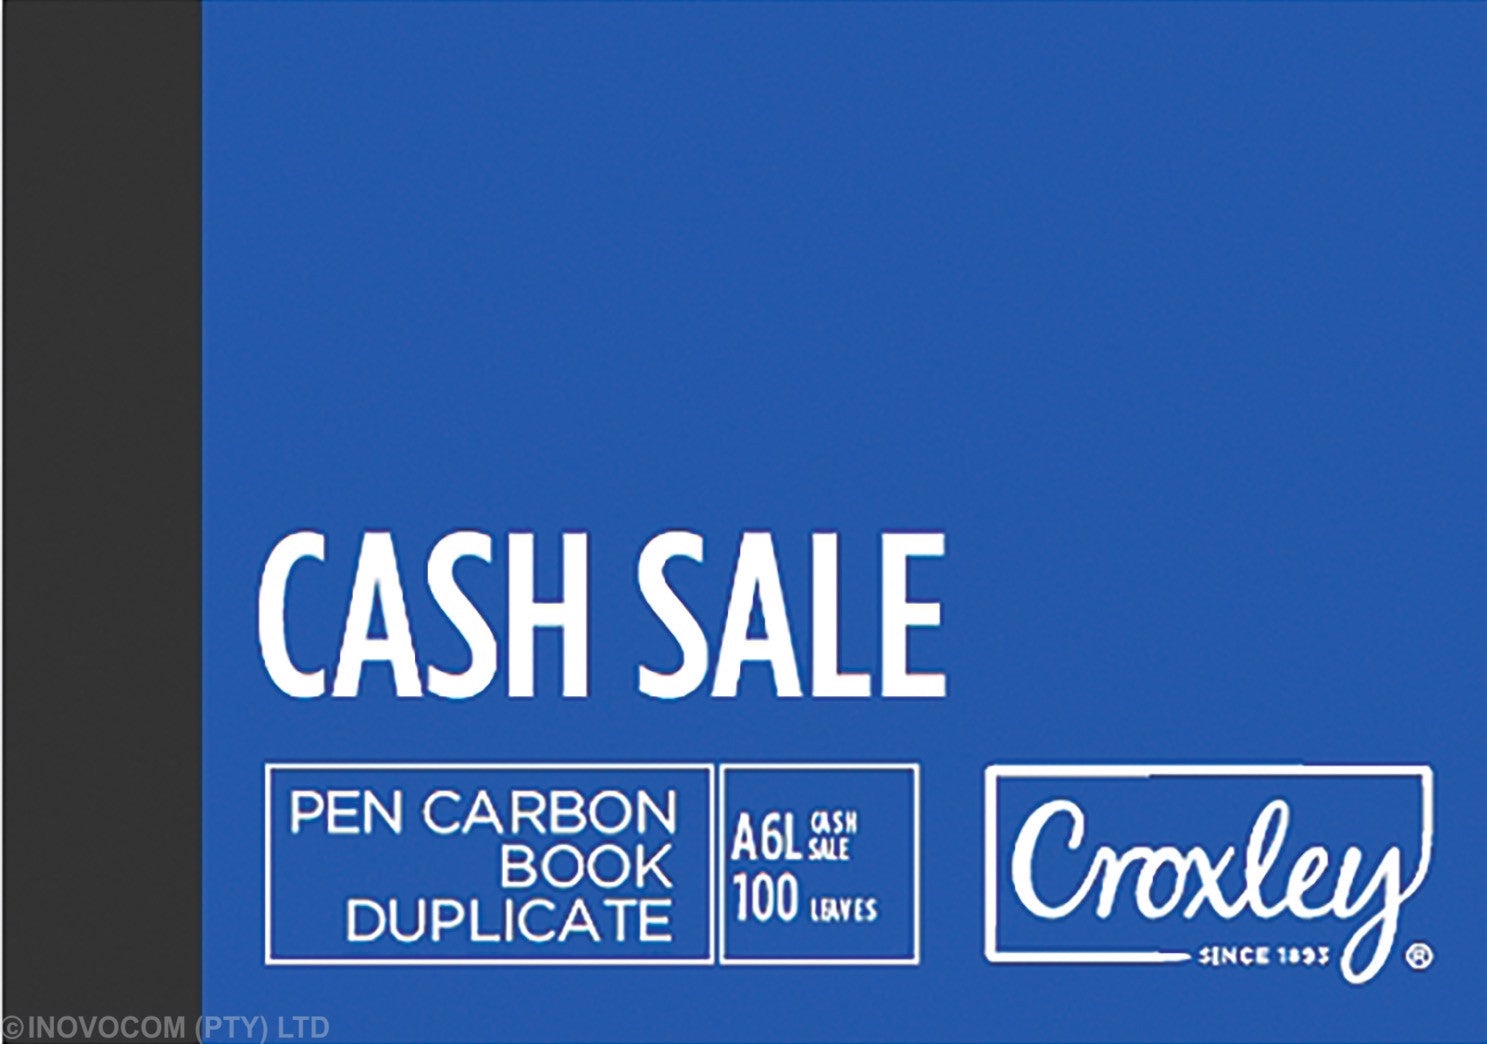 Croxley JD16PCS A6L Pen Carbon Book Cash Sale Duplicate